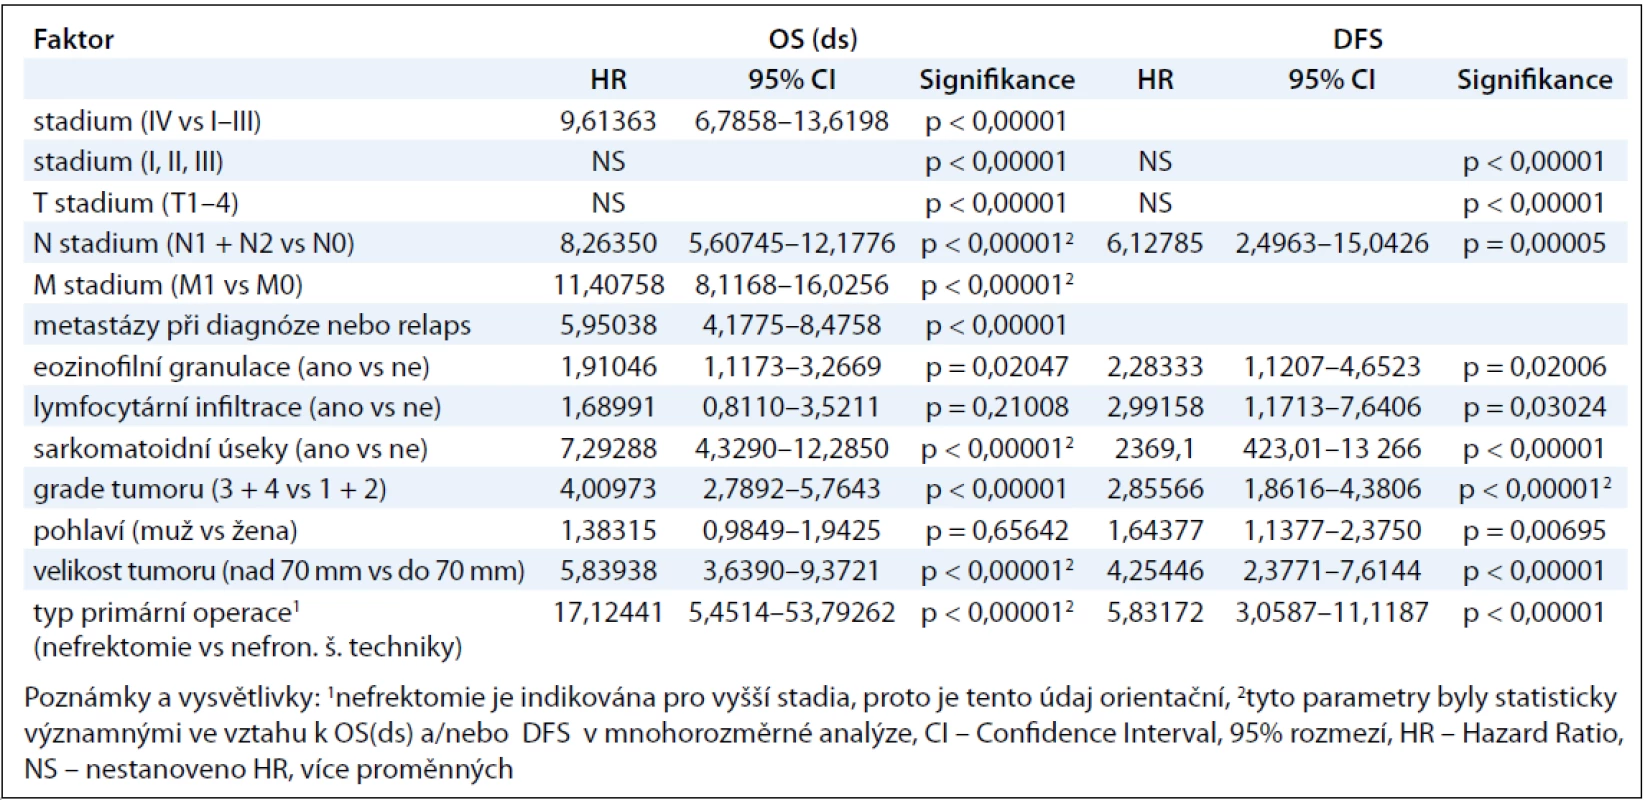 Vztah mezi sledovanými faktory a OS(ds), resp. DFS u pacientů s renálním karcinomem.
